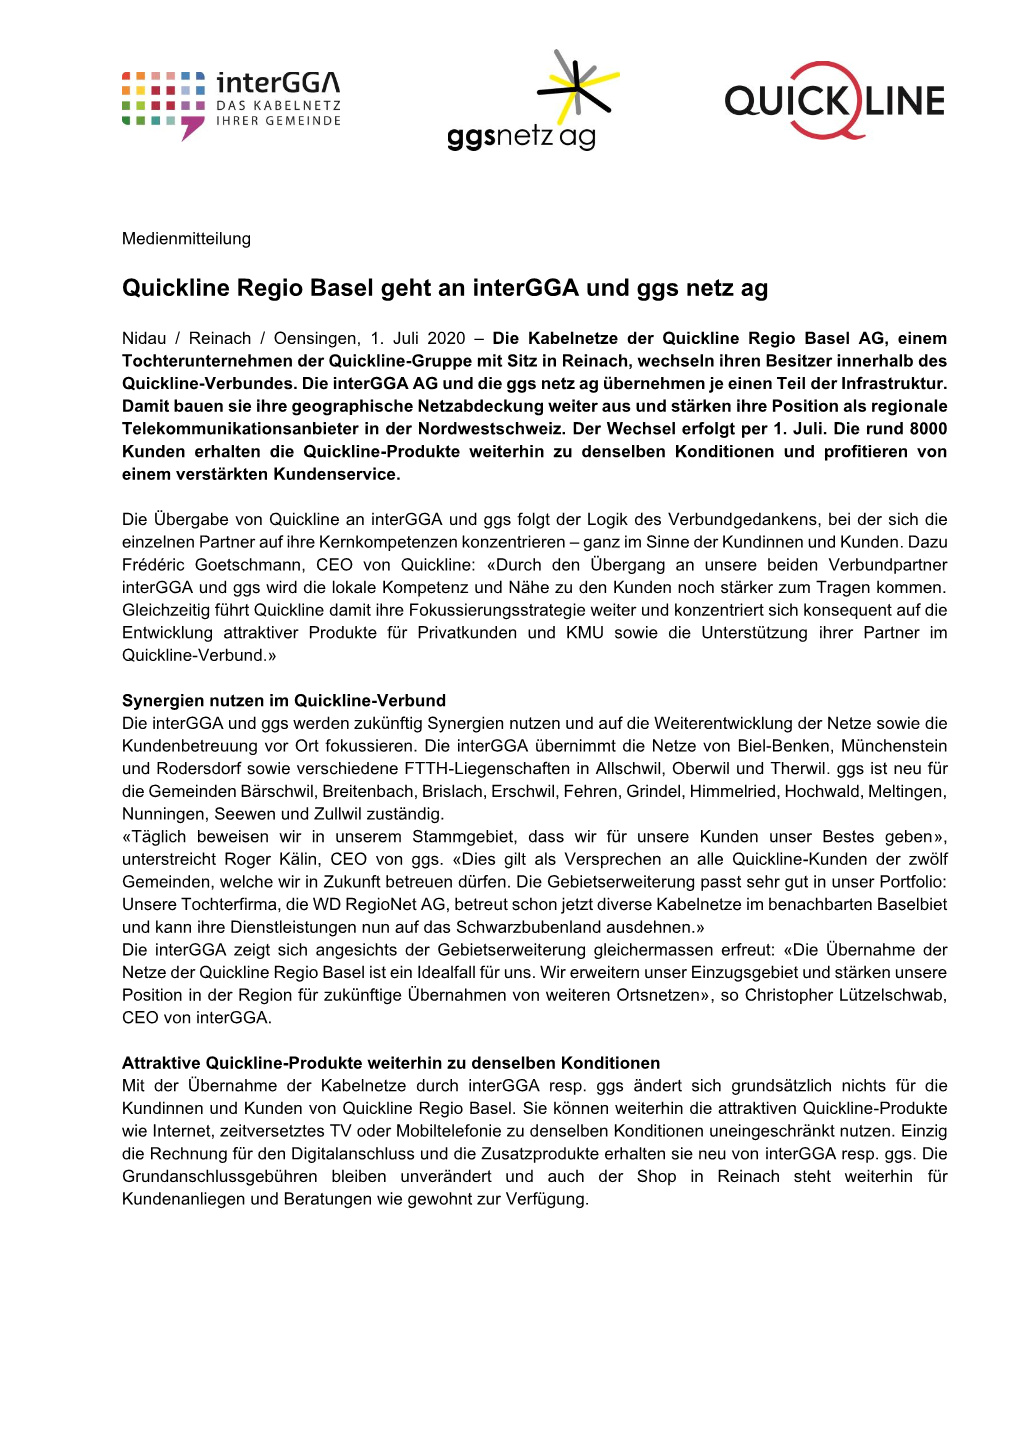 Quickline Regio Basel Geht an Intergga Und Ggs Netz Ag